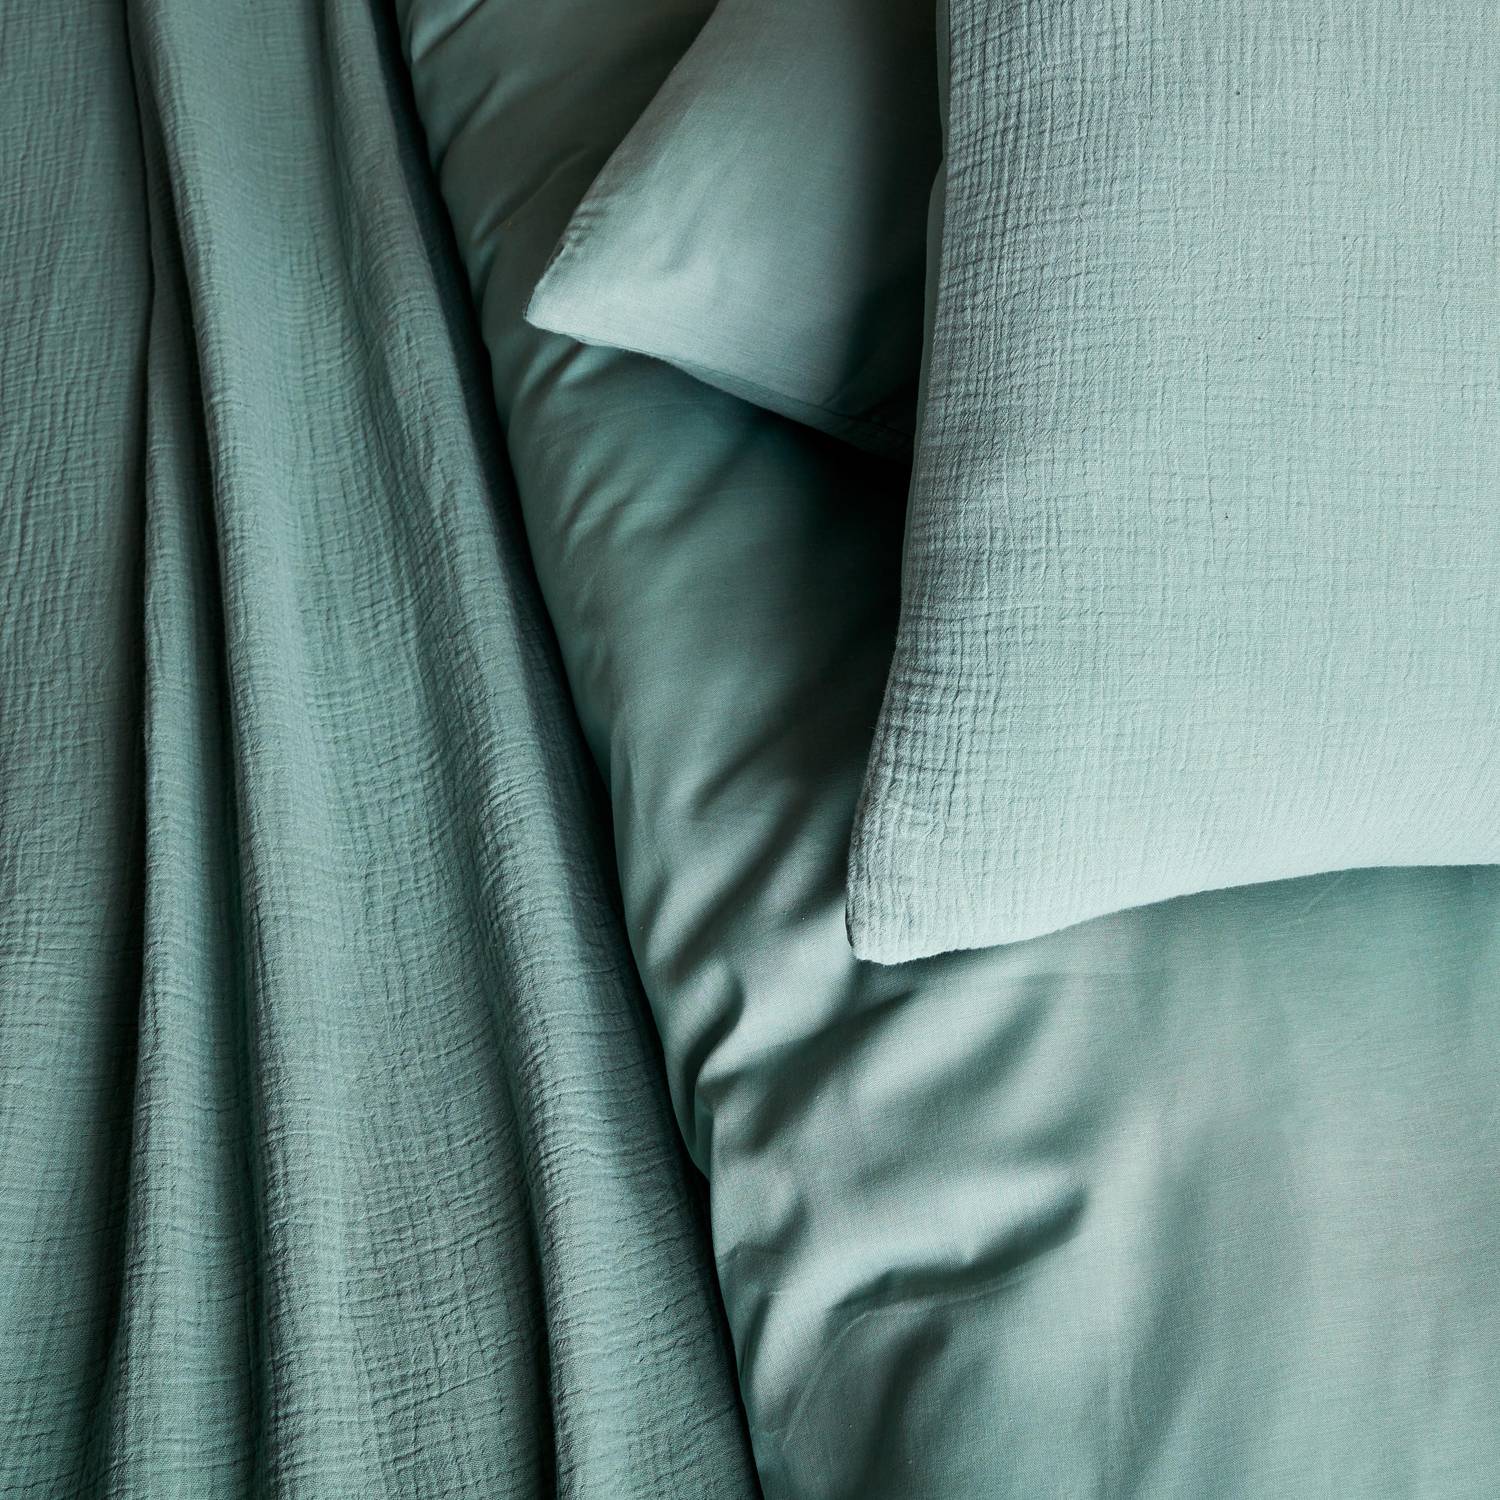 Bettwäschegarnitur aus mandelgrüner Baumwoll-Gaze / Baumwolle, 1 Person, 1 Bettbezug mit 1 Kopfkissenbezug 140 x 200 cm Photo2